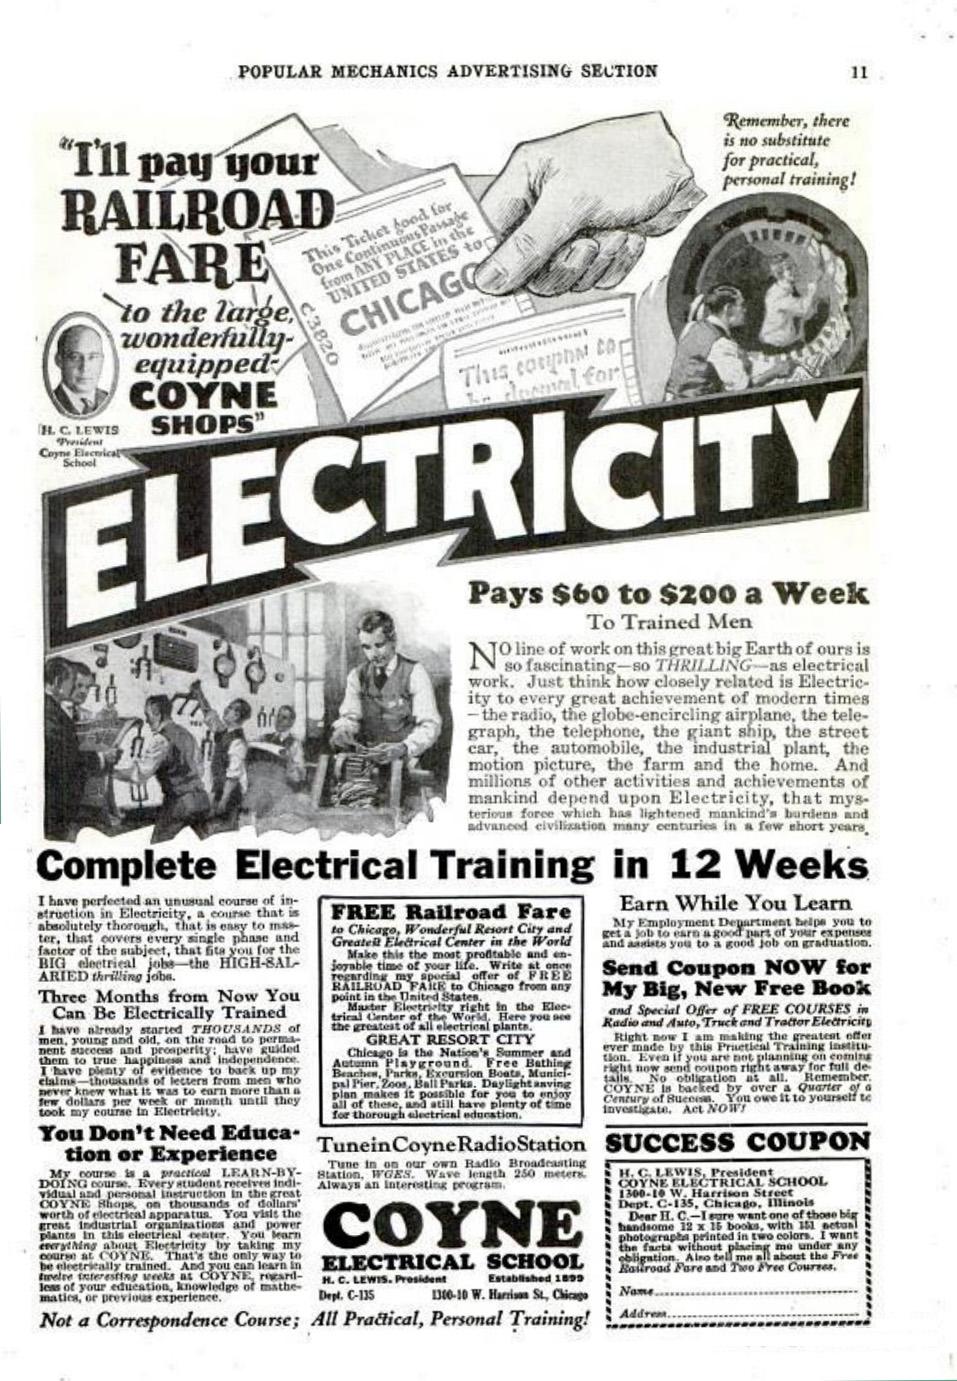 Реклама за набиране на курсисти за Електротехническото училище Койн .